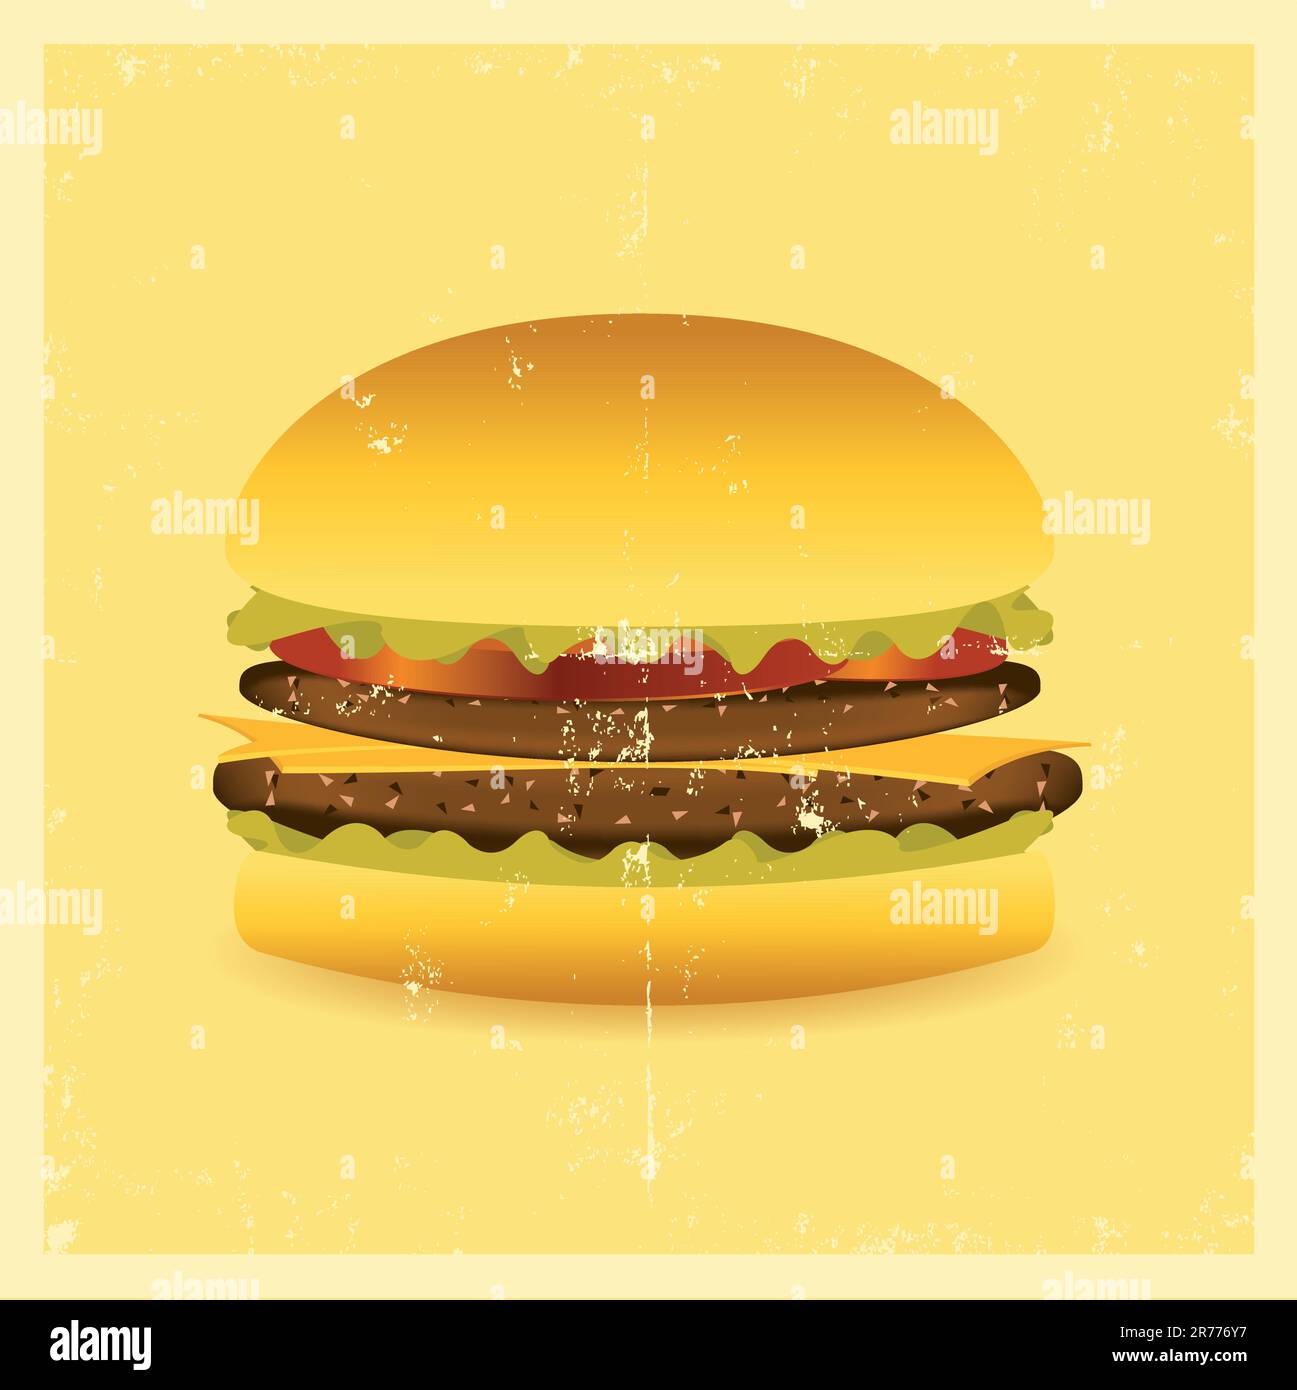 Hamburger Nourriture Américaine PNG , Hamburger, Aliments, Américain Image  PNG pour le téléchargement libre